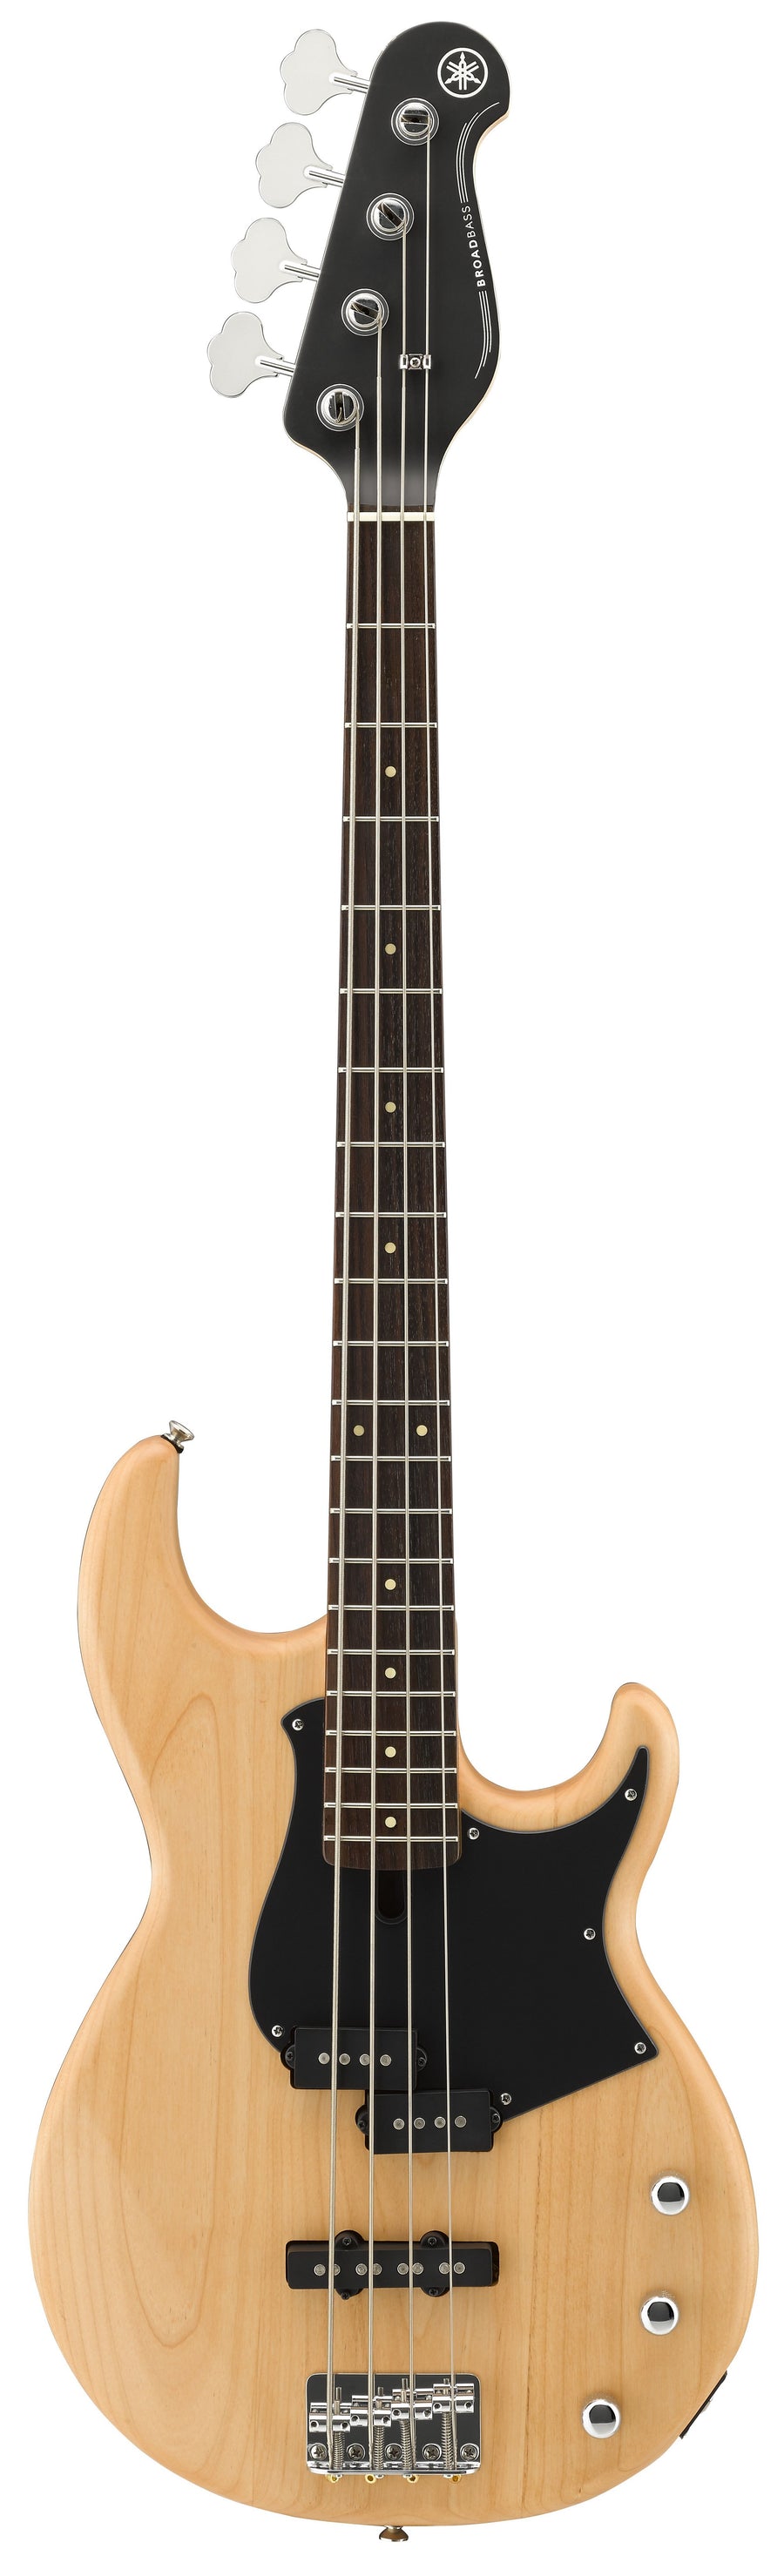 Yamaha BB234 4-String Bass Guitar Yellow Natural Satin